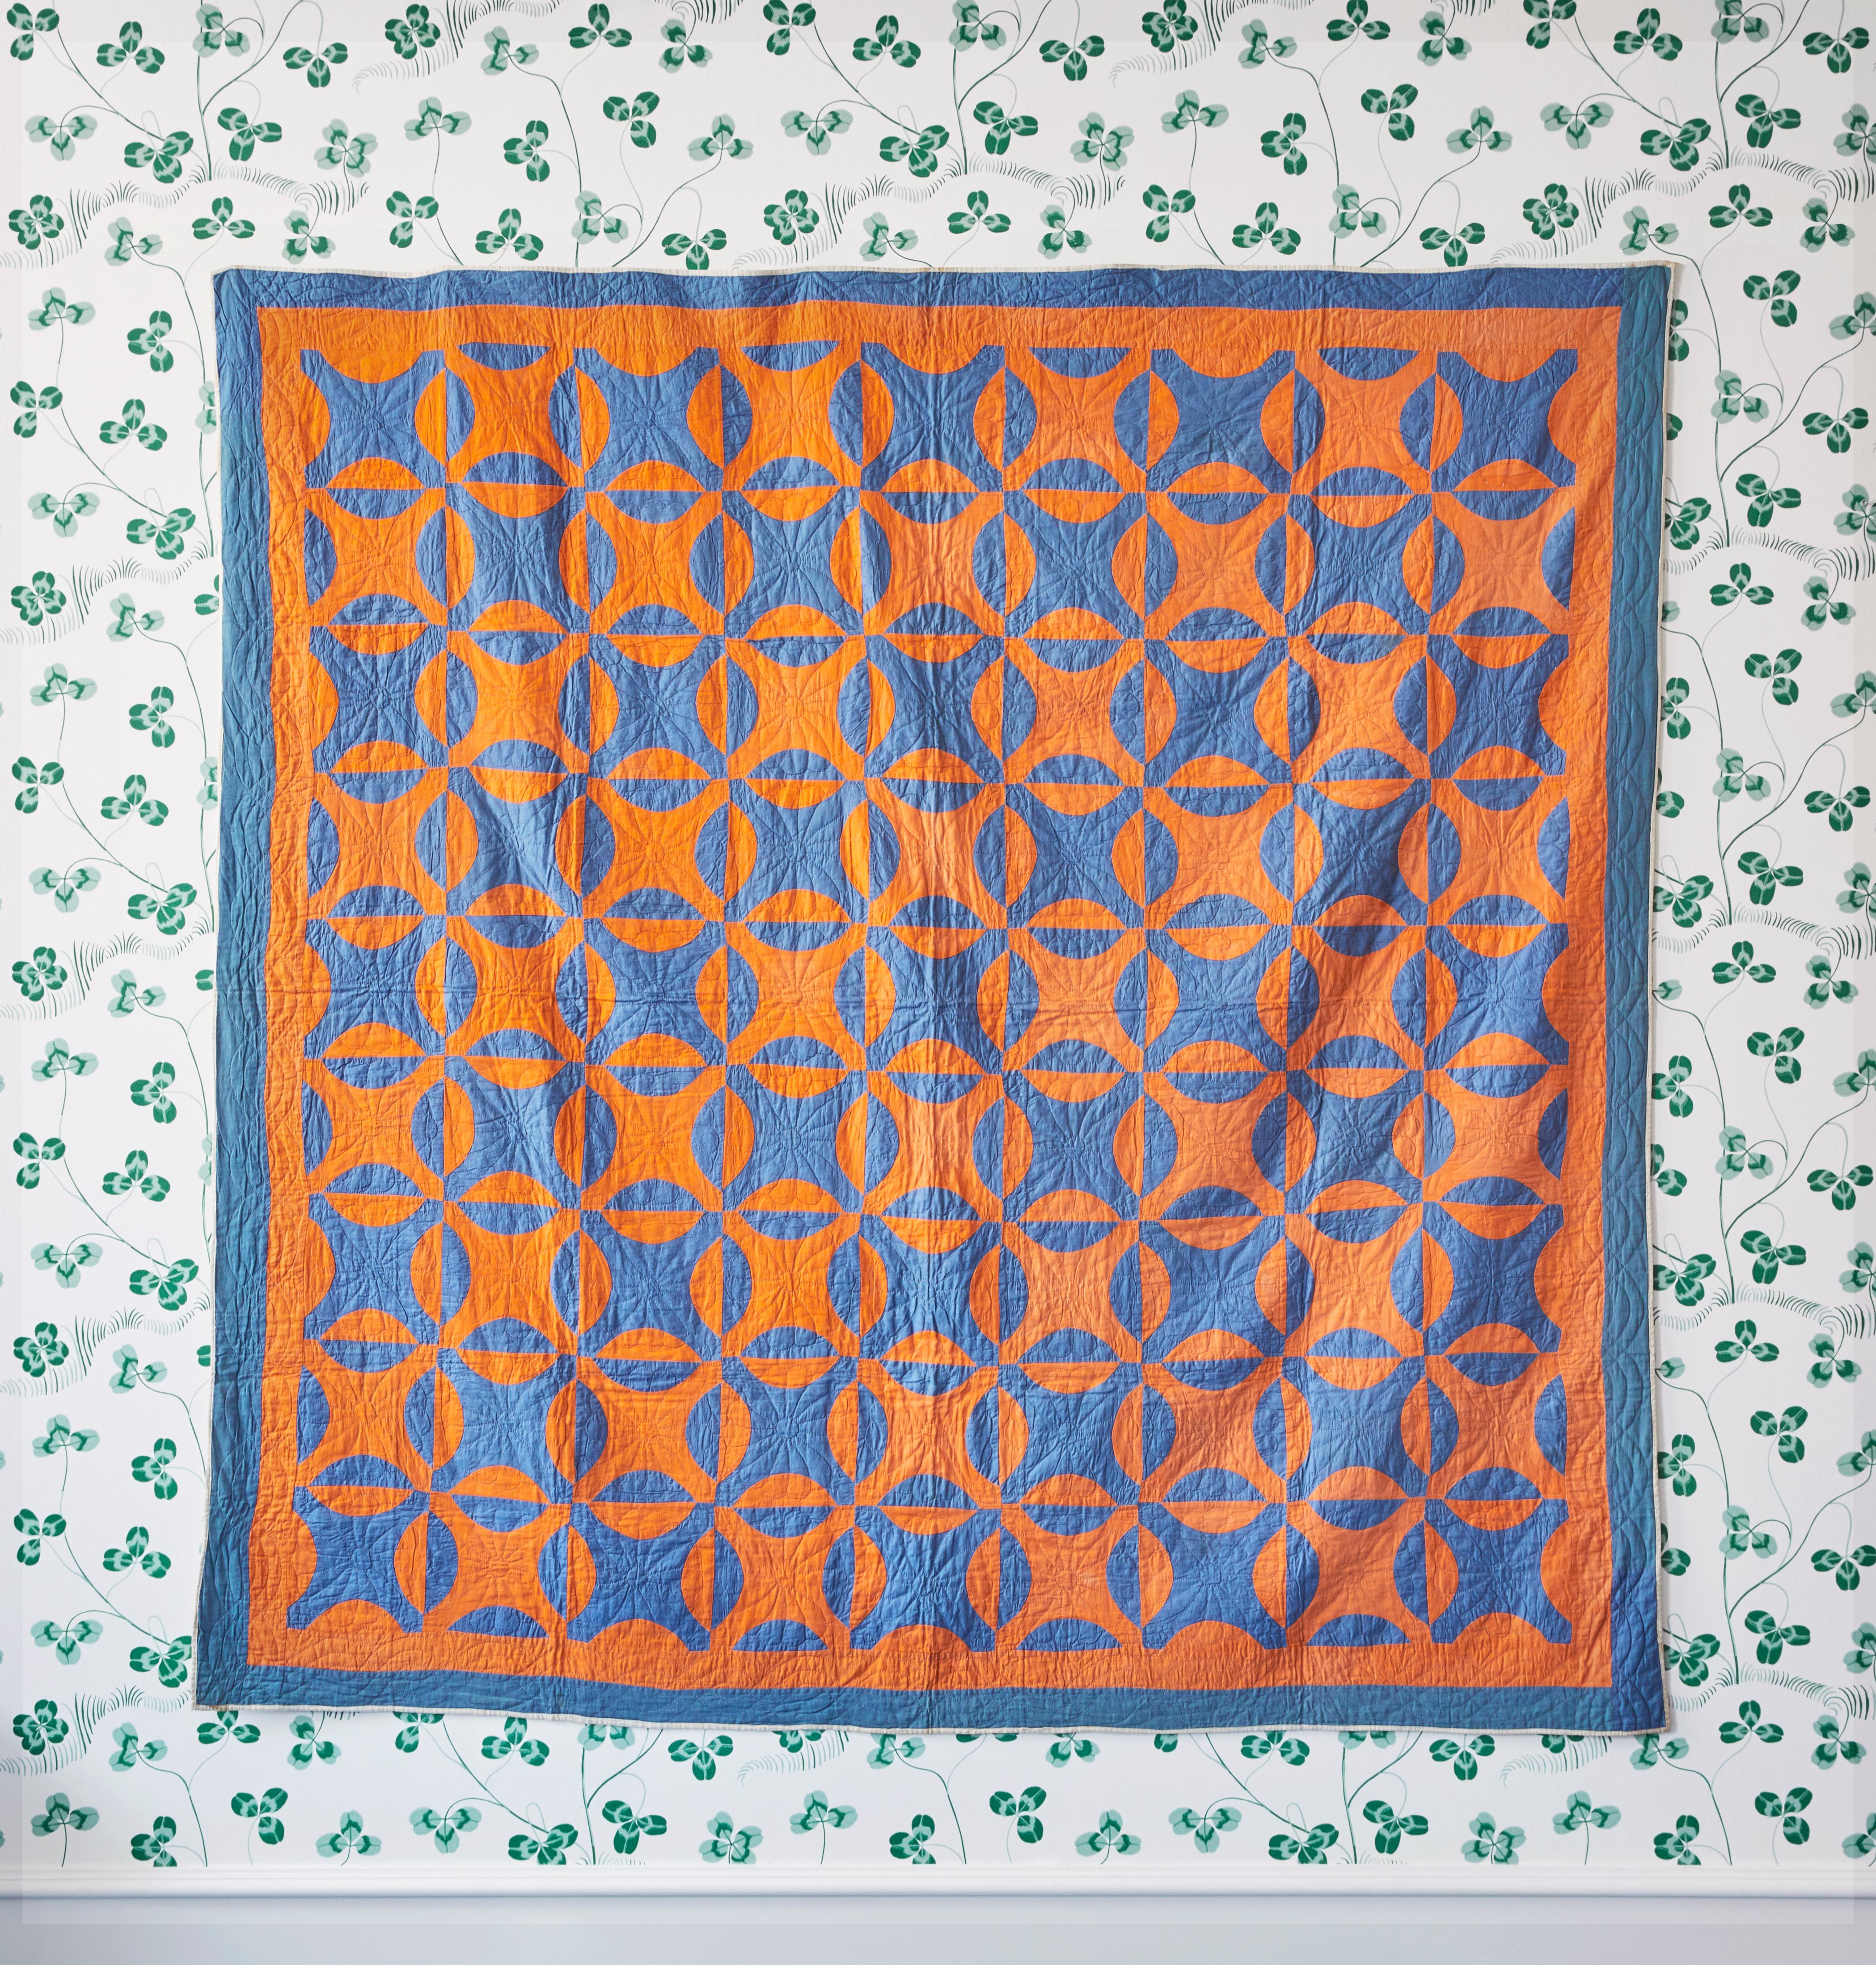 USA, 1890s

Antique blue and orange “Nine Patch” quilt.

Measures: H 200 x W 205 cm.